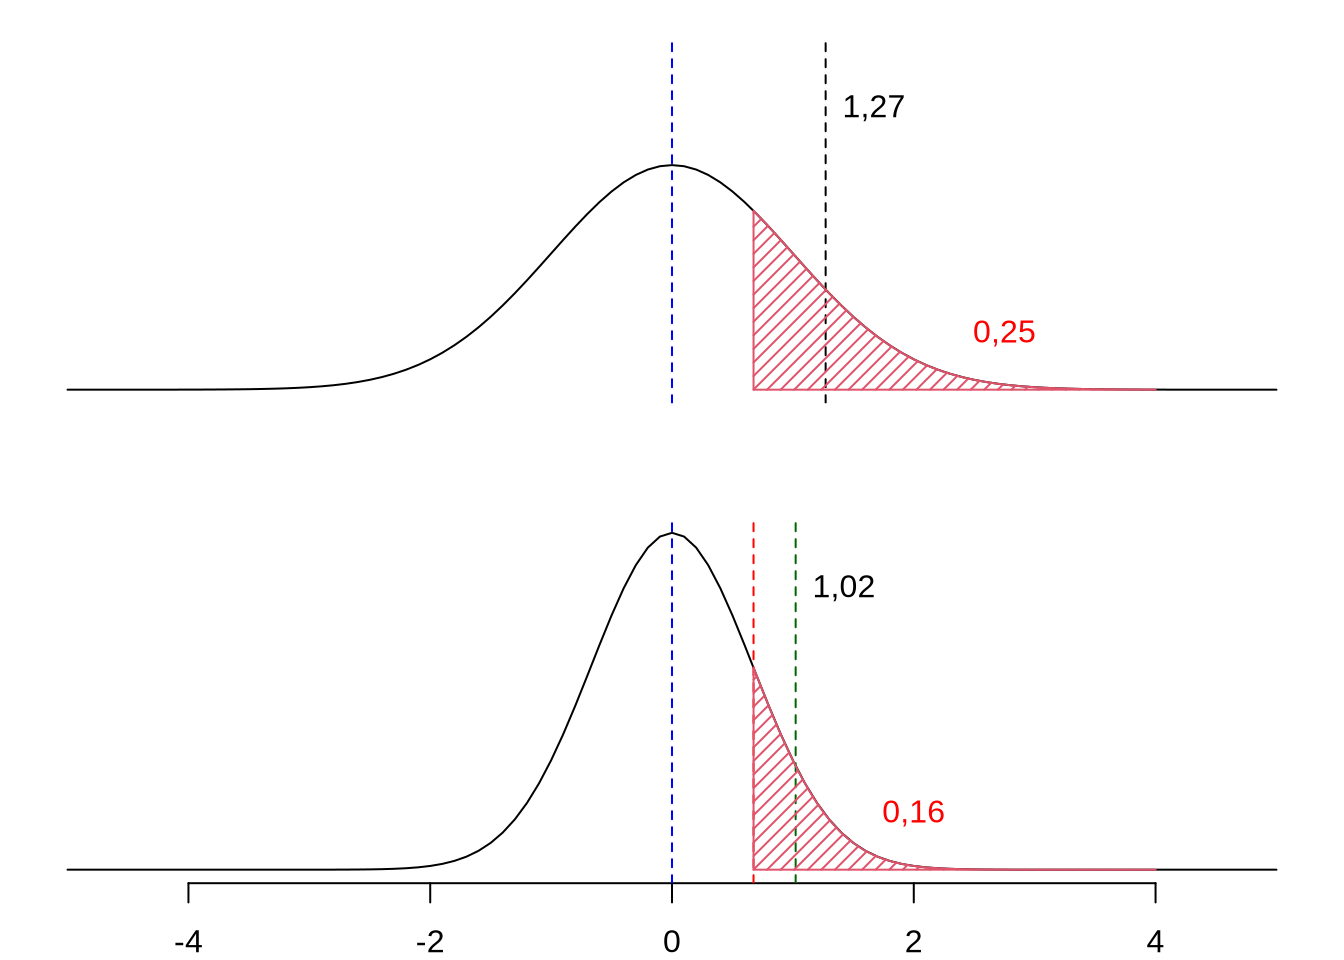 La relación entre el diferencial de selección y la varianza fenotípica de la característica. En la parte superior se ilustra la distribución fenotípica de una característica respecto a la media de la misma (es decir, con media de cero) y con desvío estándar de \(1\) unidad de la característica. Si decidimos hacer selección por truncamiento, eligiendo arbitrariamente un umbral \(\mathrm{u=0,6745}\) (el percentil \(75\) de la distribución normal estándar), los individuos que pasen ese valor serán consideramos como reproductores. En este caso, \(25\%\) de los individuos cumplen esa condición y la media de los individuos seleccionados es de \(\mathrm{\bar x_S=1,27}\), por lo que el diferencial de selección será \(\mathrm{S=\bar x_S-\bar x_0=1,27-0=1,27}\). En la parte inferior, la población (para la misma característica) tiene un desvío de \(2/3\), inferior al de la población en la parte superior; esto implica que ahora solo el \(16\%\) de los individuos serán seleccionados como reproductores. Además, el diferencial de selección será ahora de \(\mathrm{S=\bar x_S-\bar x_0=1,02-0=1,02}\), inferior al de la población de la gráfica superior, pese a que el valor de umbral es el mismo en ambos casos.